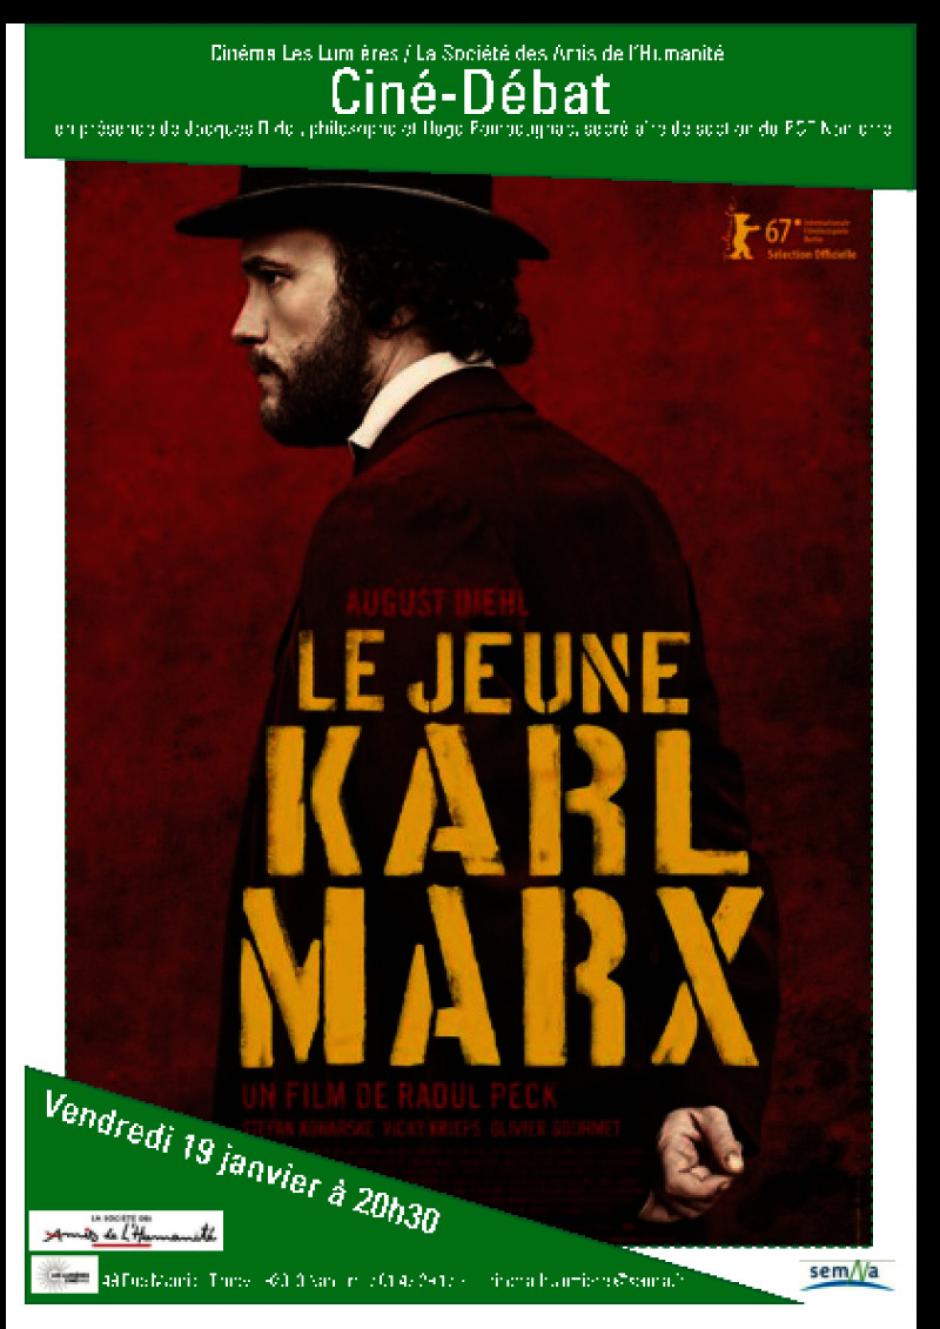 Le jeune Karl Marx au cinéma les Lumières le vendredi 19 janvier